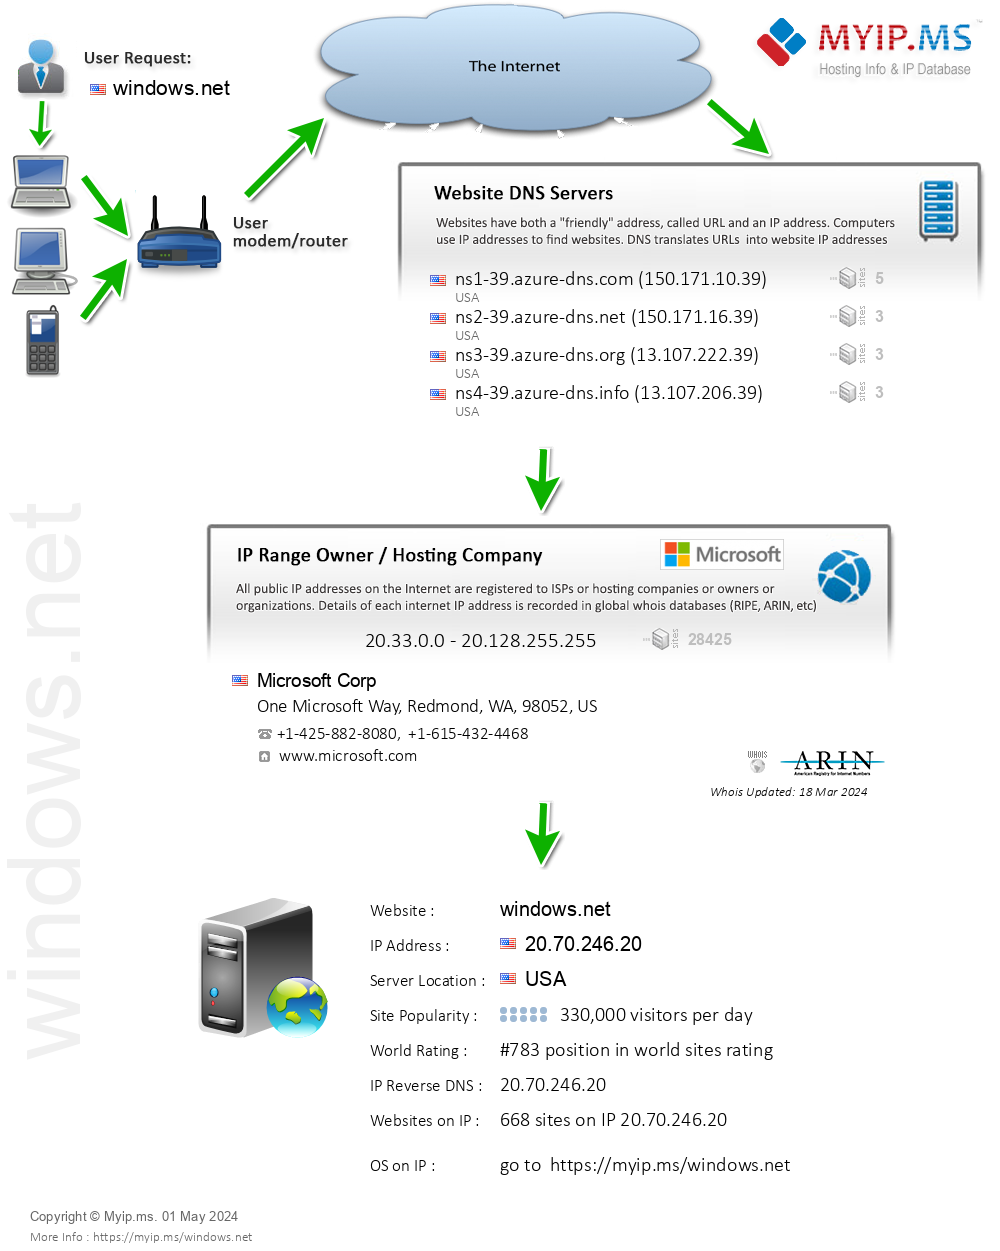 Windows.net - Website Hosting Visual IP Diagram